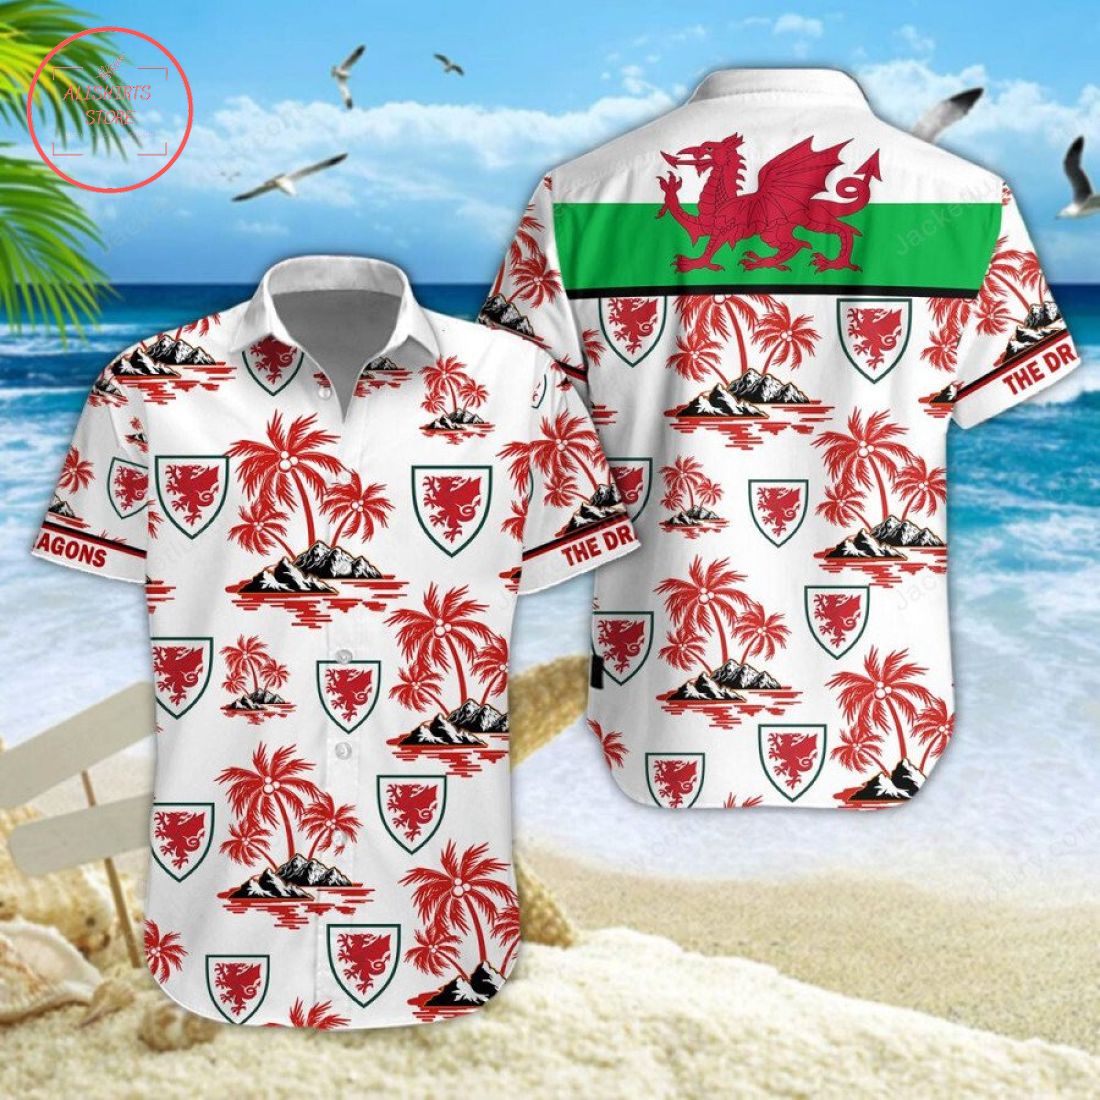 Wales national football team Hawaiian Shirt and Shorts